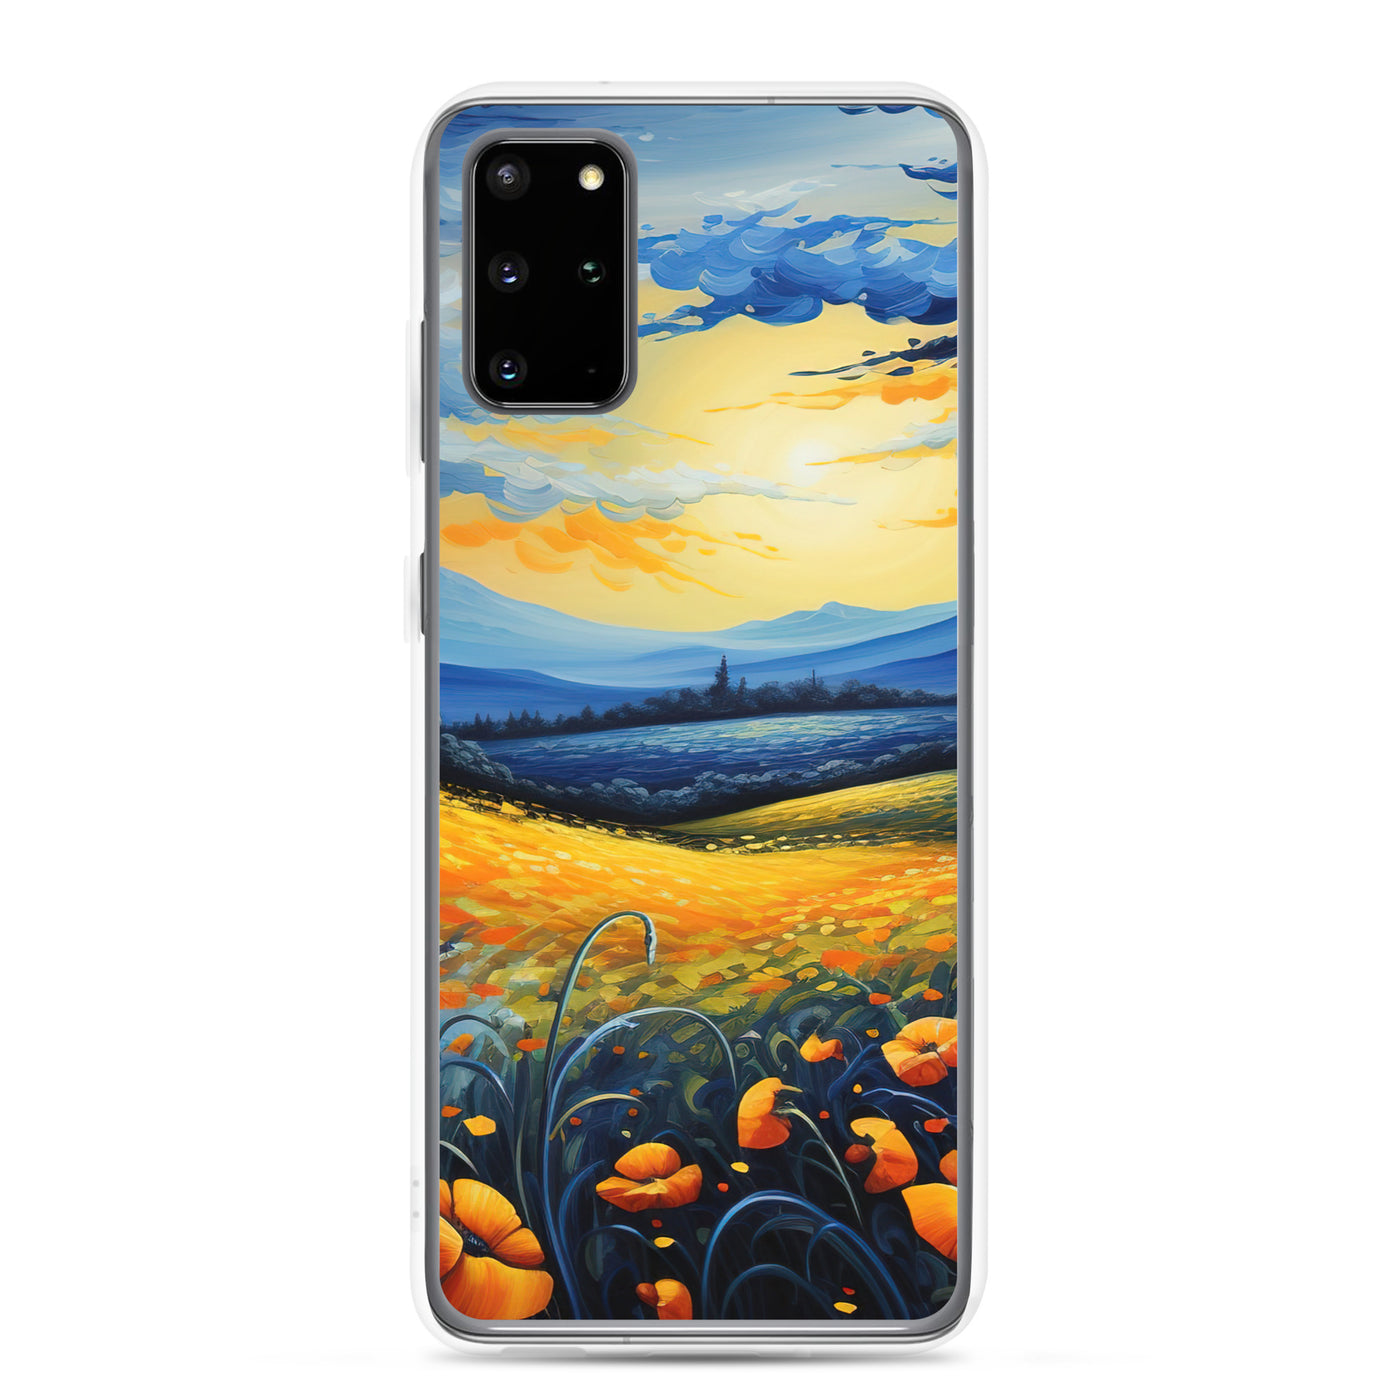 Berglandschaft mit schönen gelben Blumen - Landschaftsmalerei - Samsung Schutzhülle (durchsichtig) berge xxx Samsung Galaxy S20 Plus